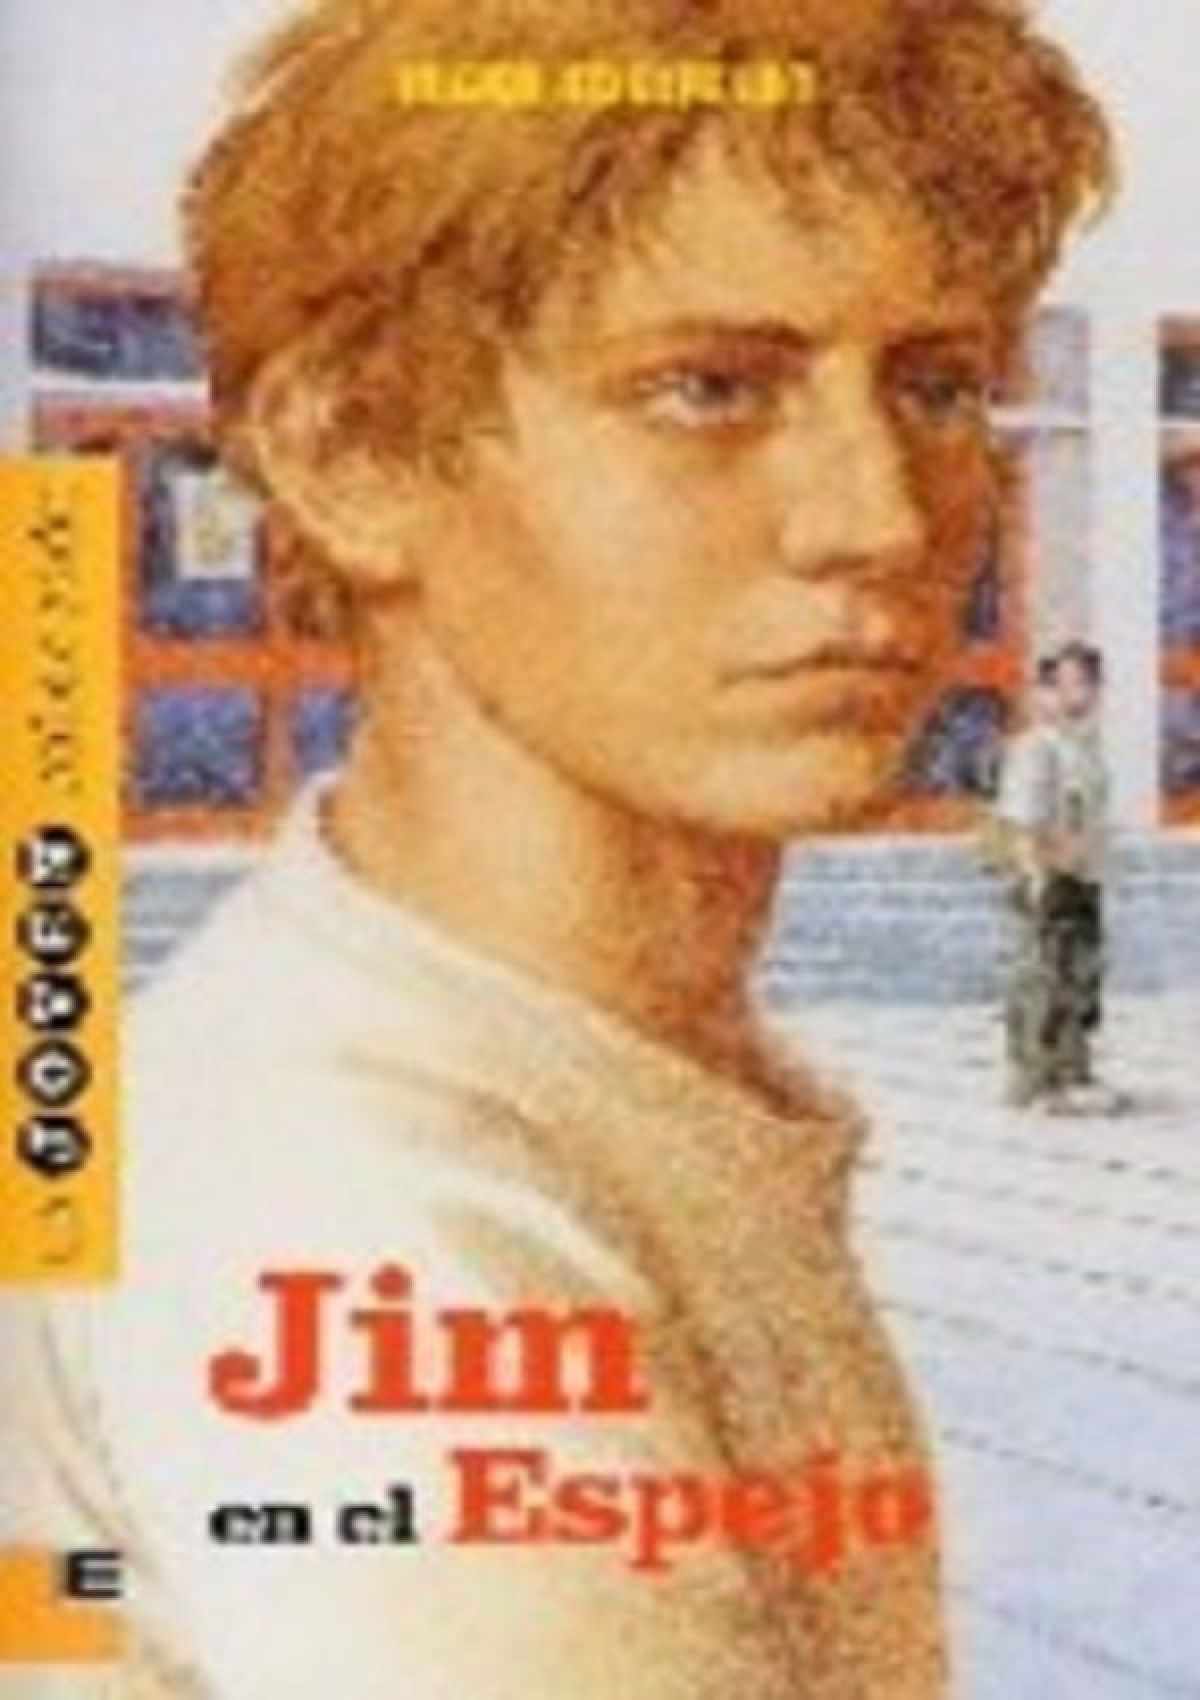 Jim en el espejo